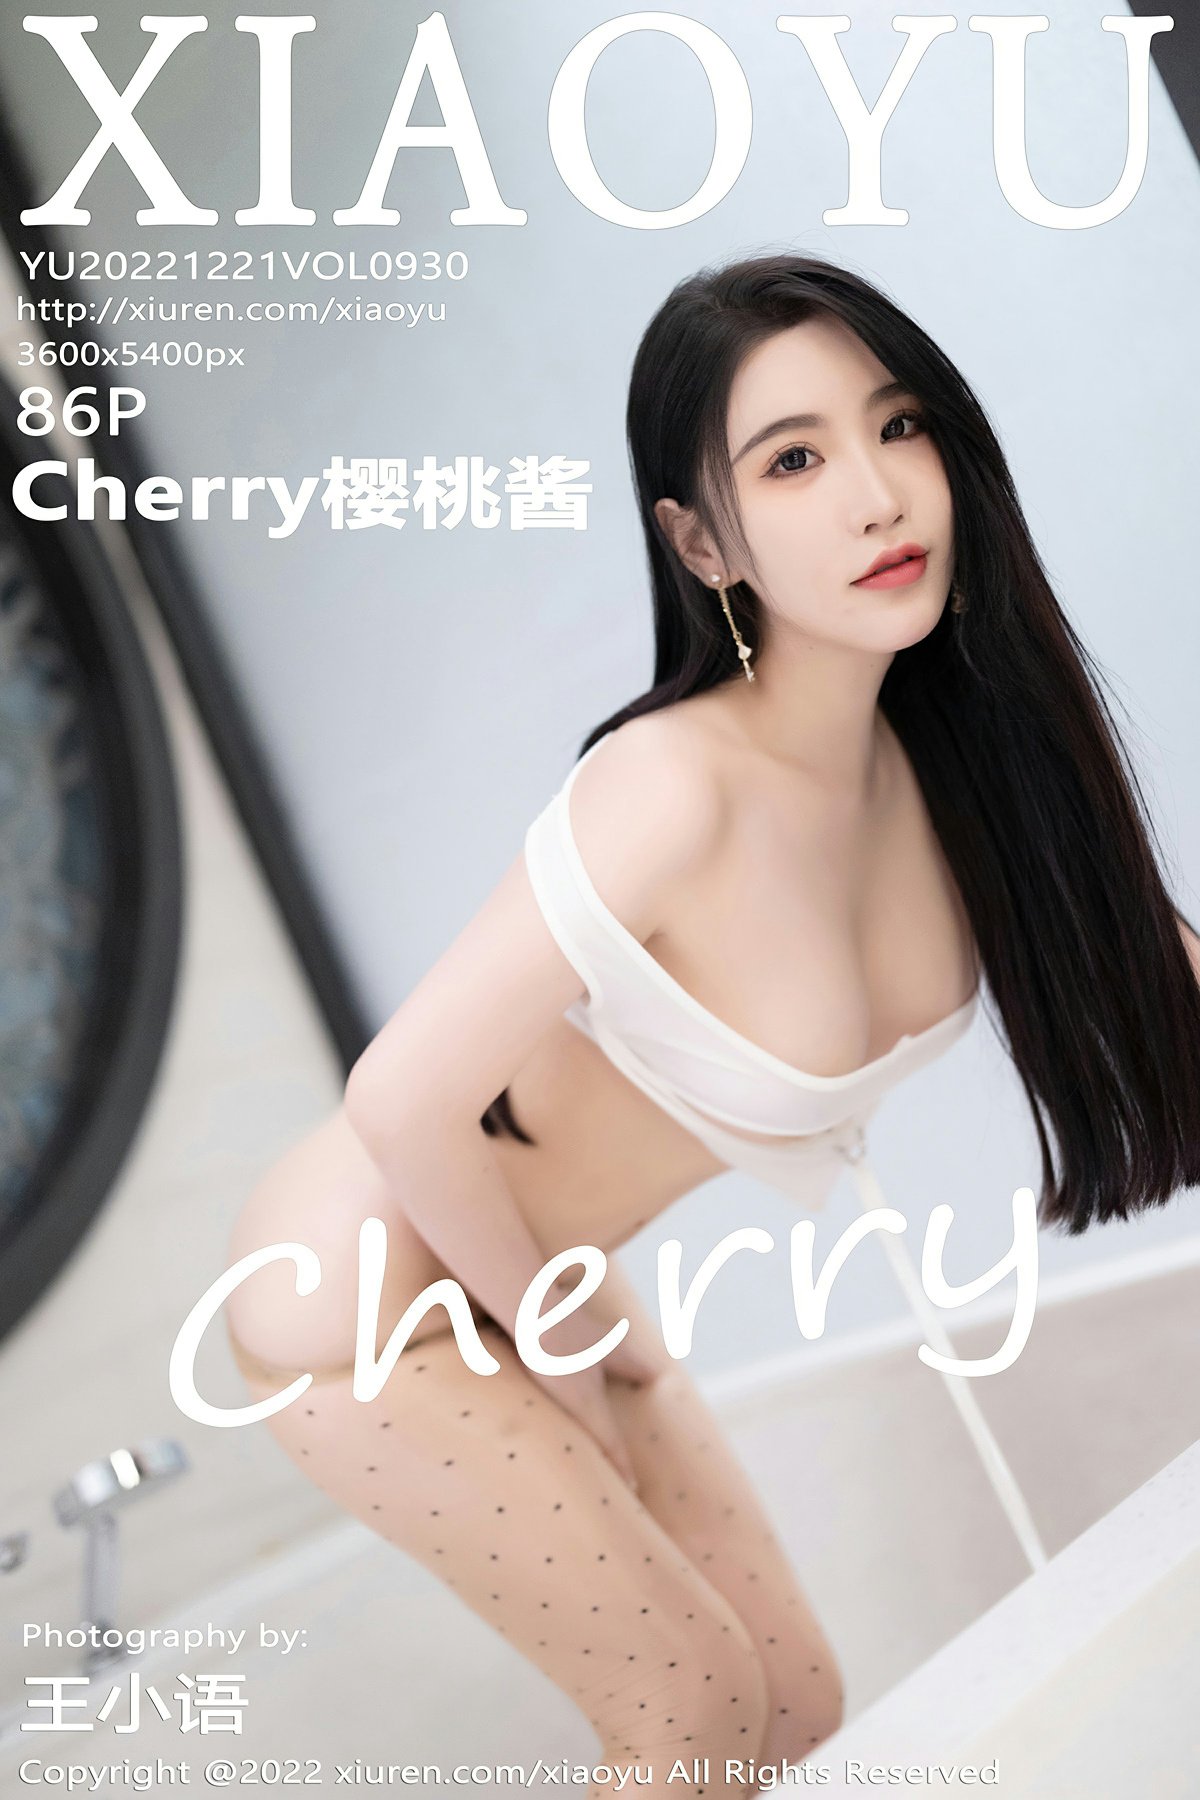 [XIAOYU语画界] 2022.12.21 VOL.930 Cherry樱桃酱